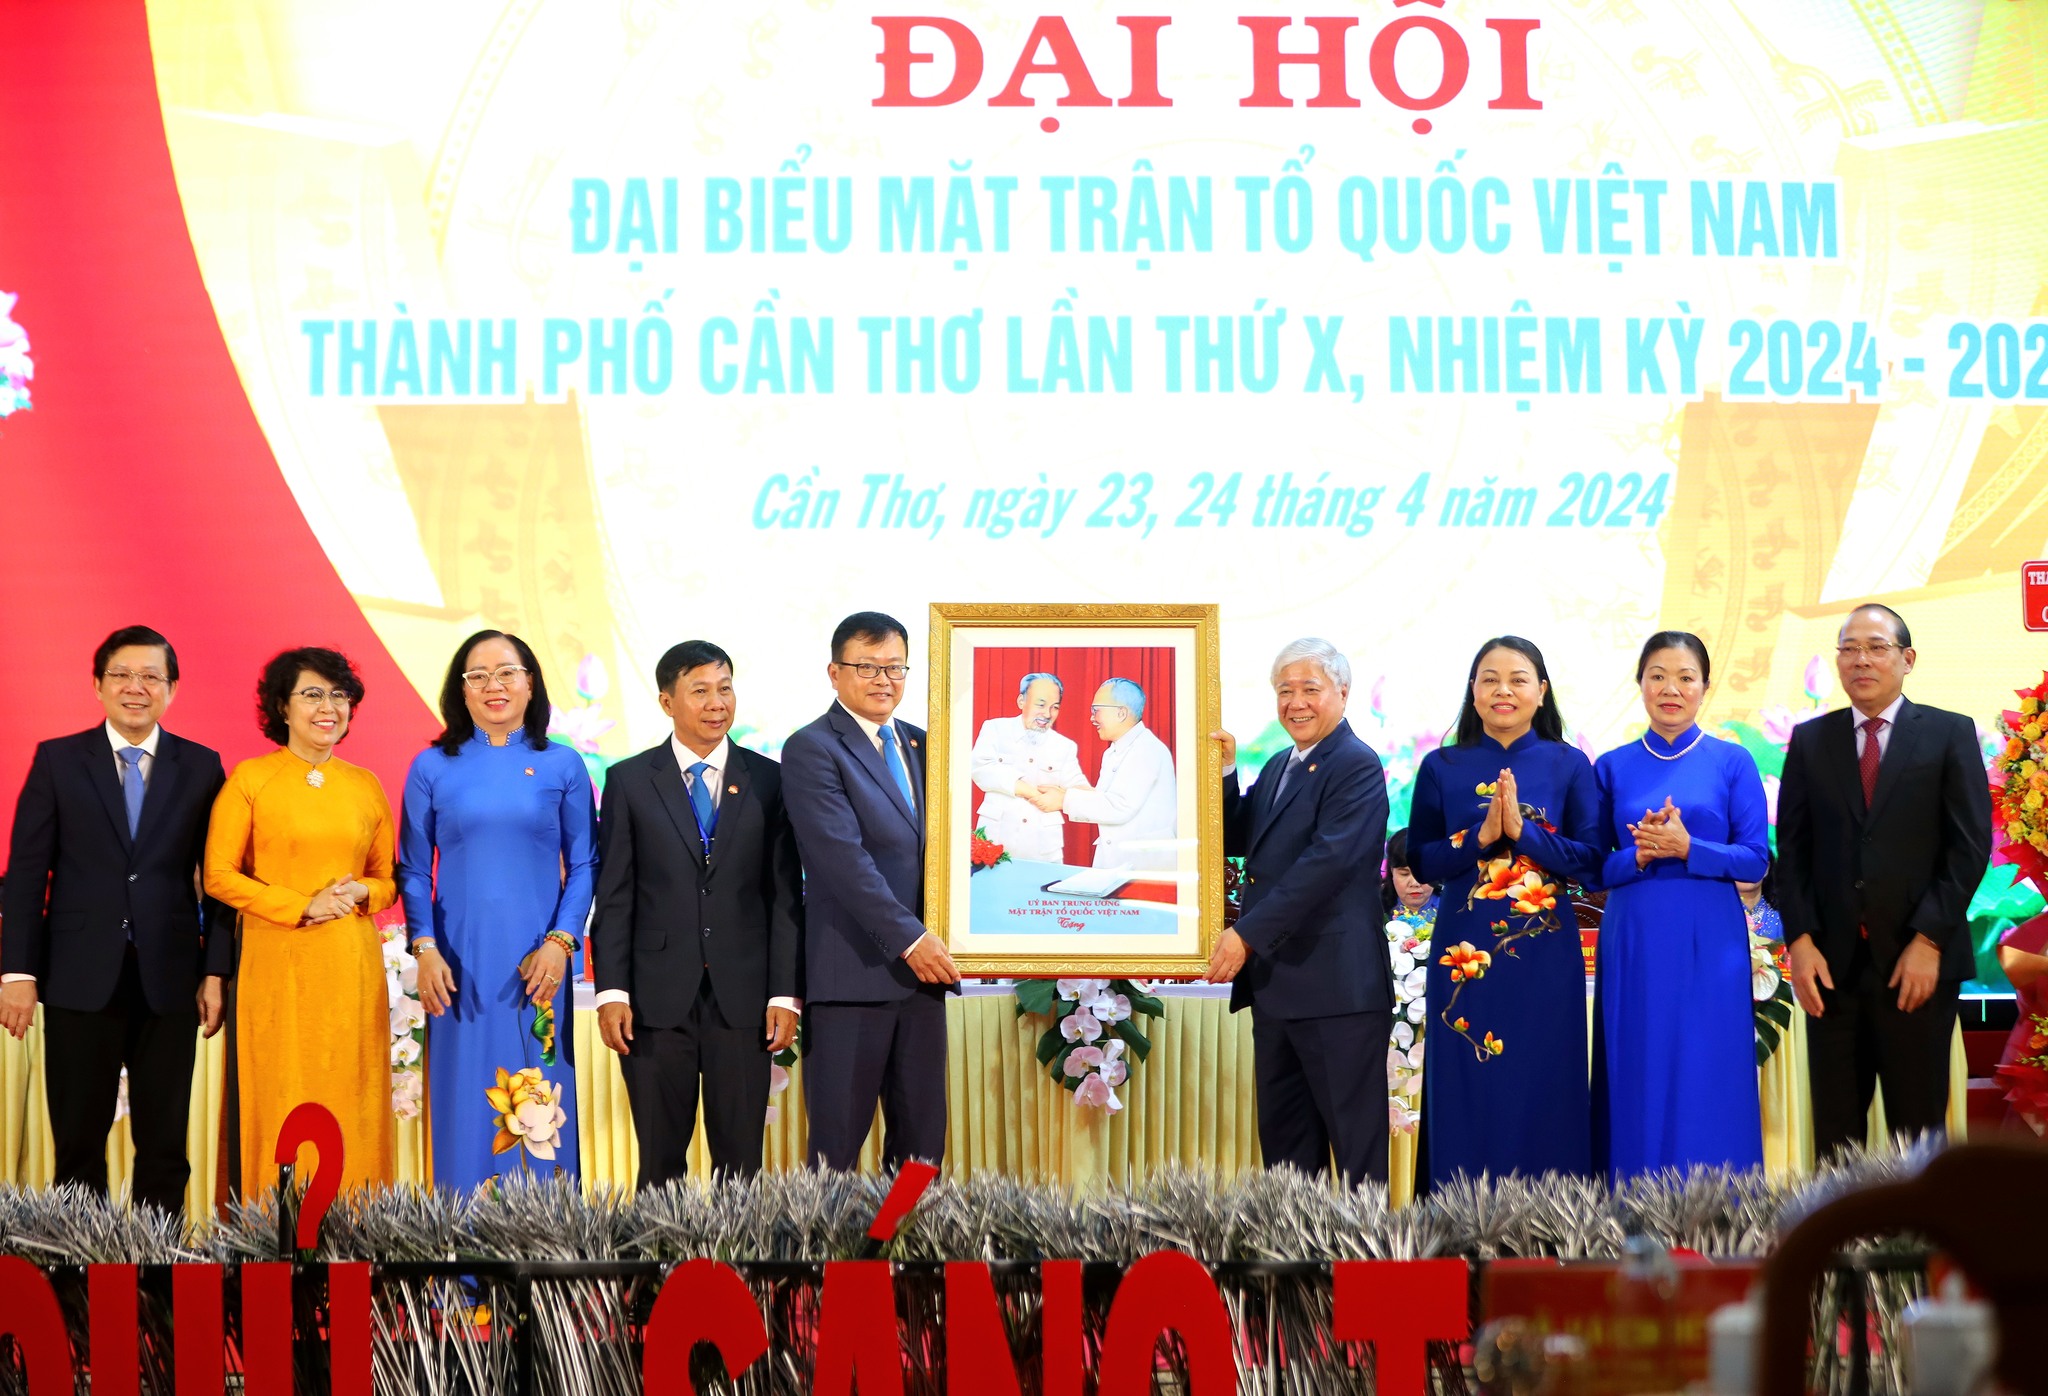 Đại hội đại biểu MTTQ Việt Nam thành phố Cần Thơ, nhiệm kỳ 2024 – 2029: Đại hội điểm cấp tỉnh toàn q...